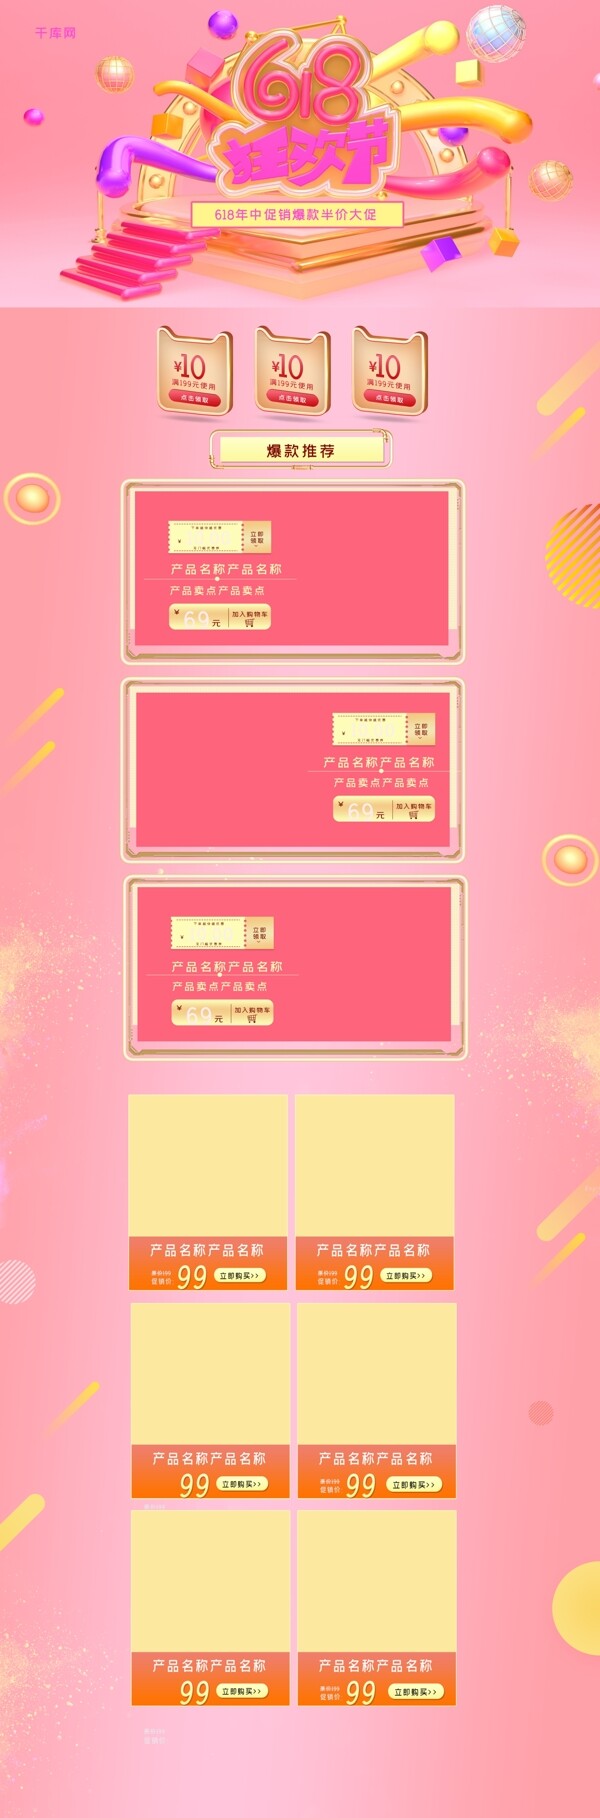 618购物狂欢日C4D粉色电商淘宝首页模板